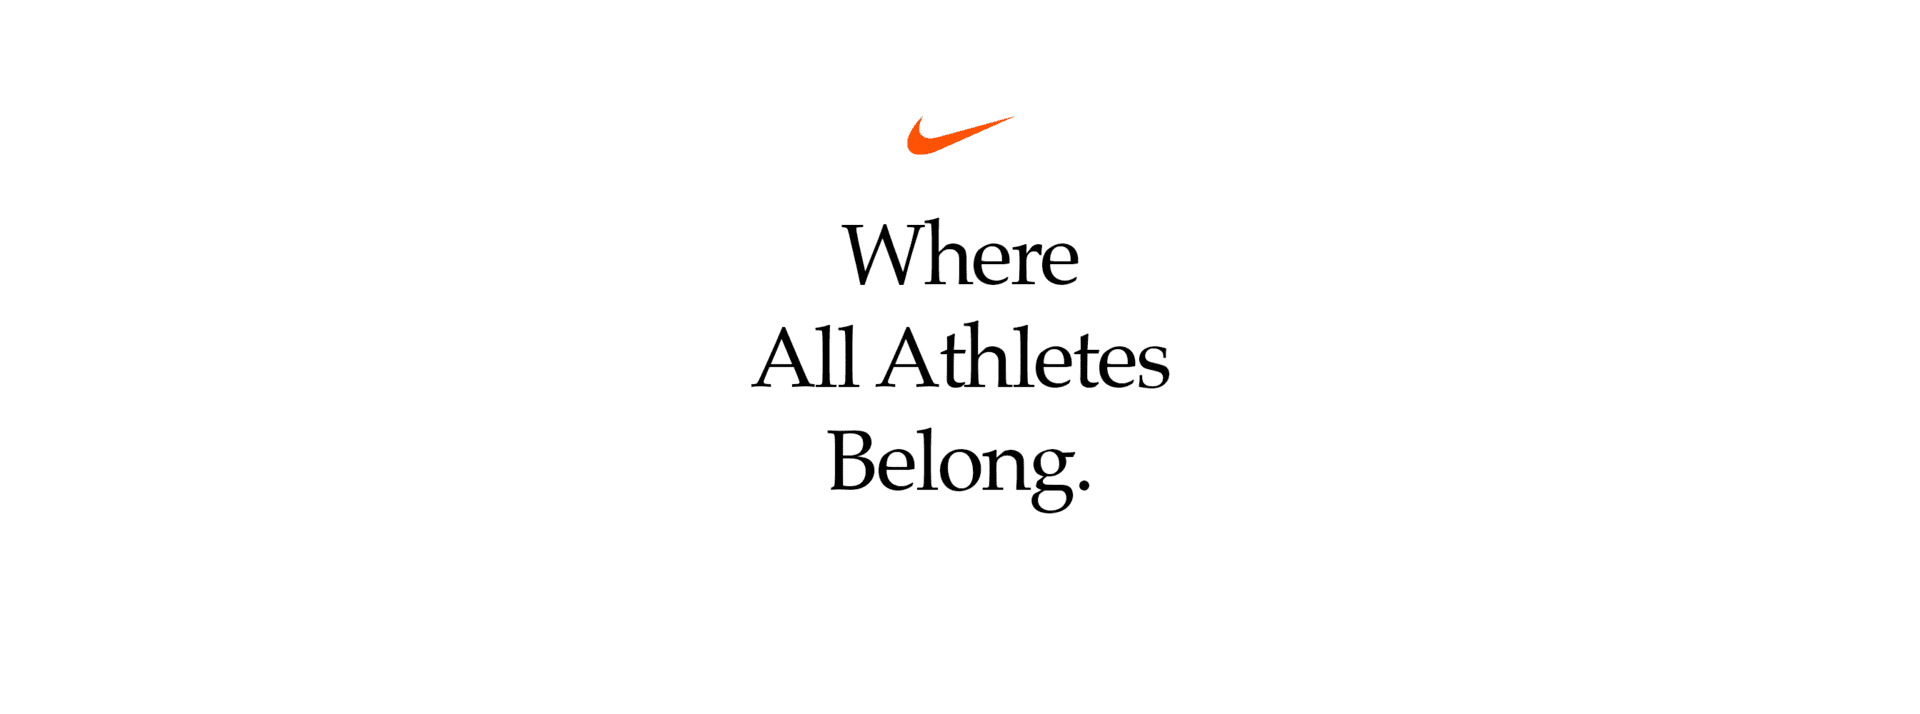 Competir Insustituible pueblo Departamento de archivos de Nike. Nike